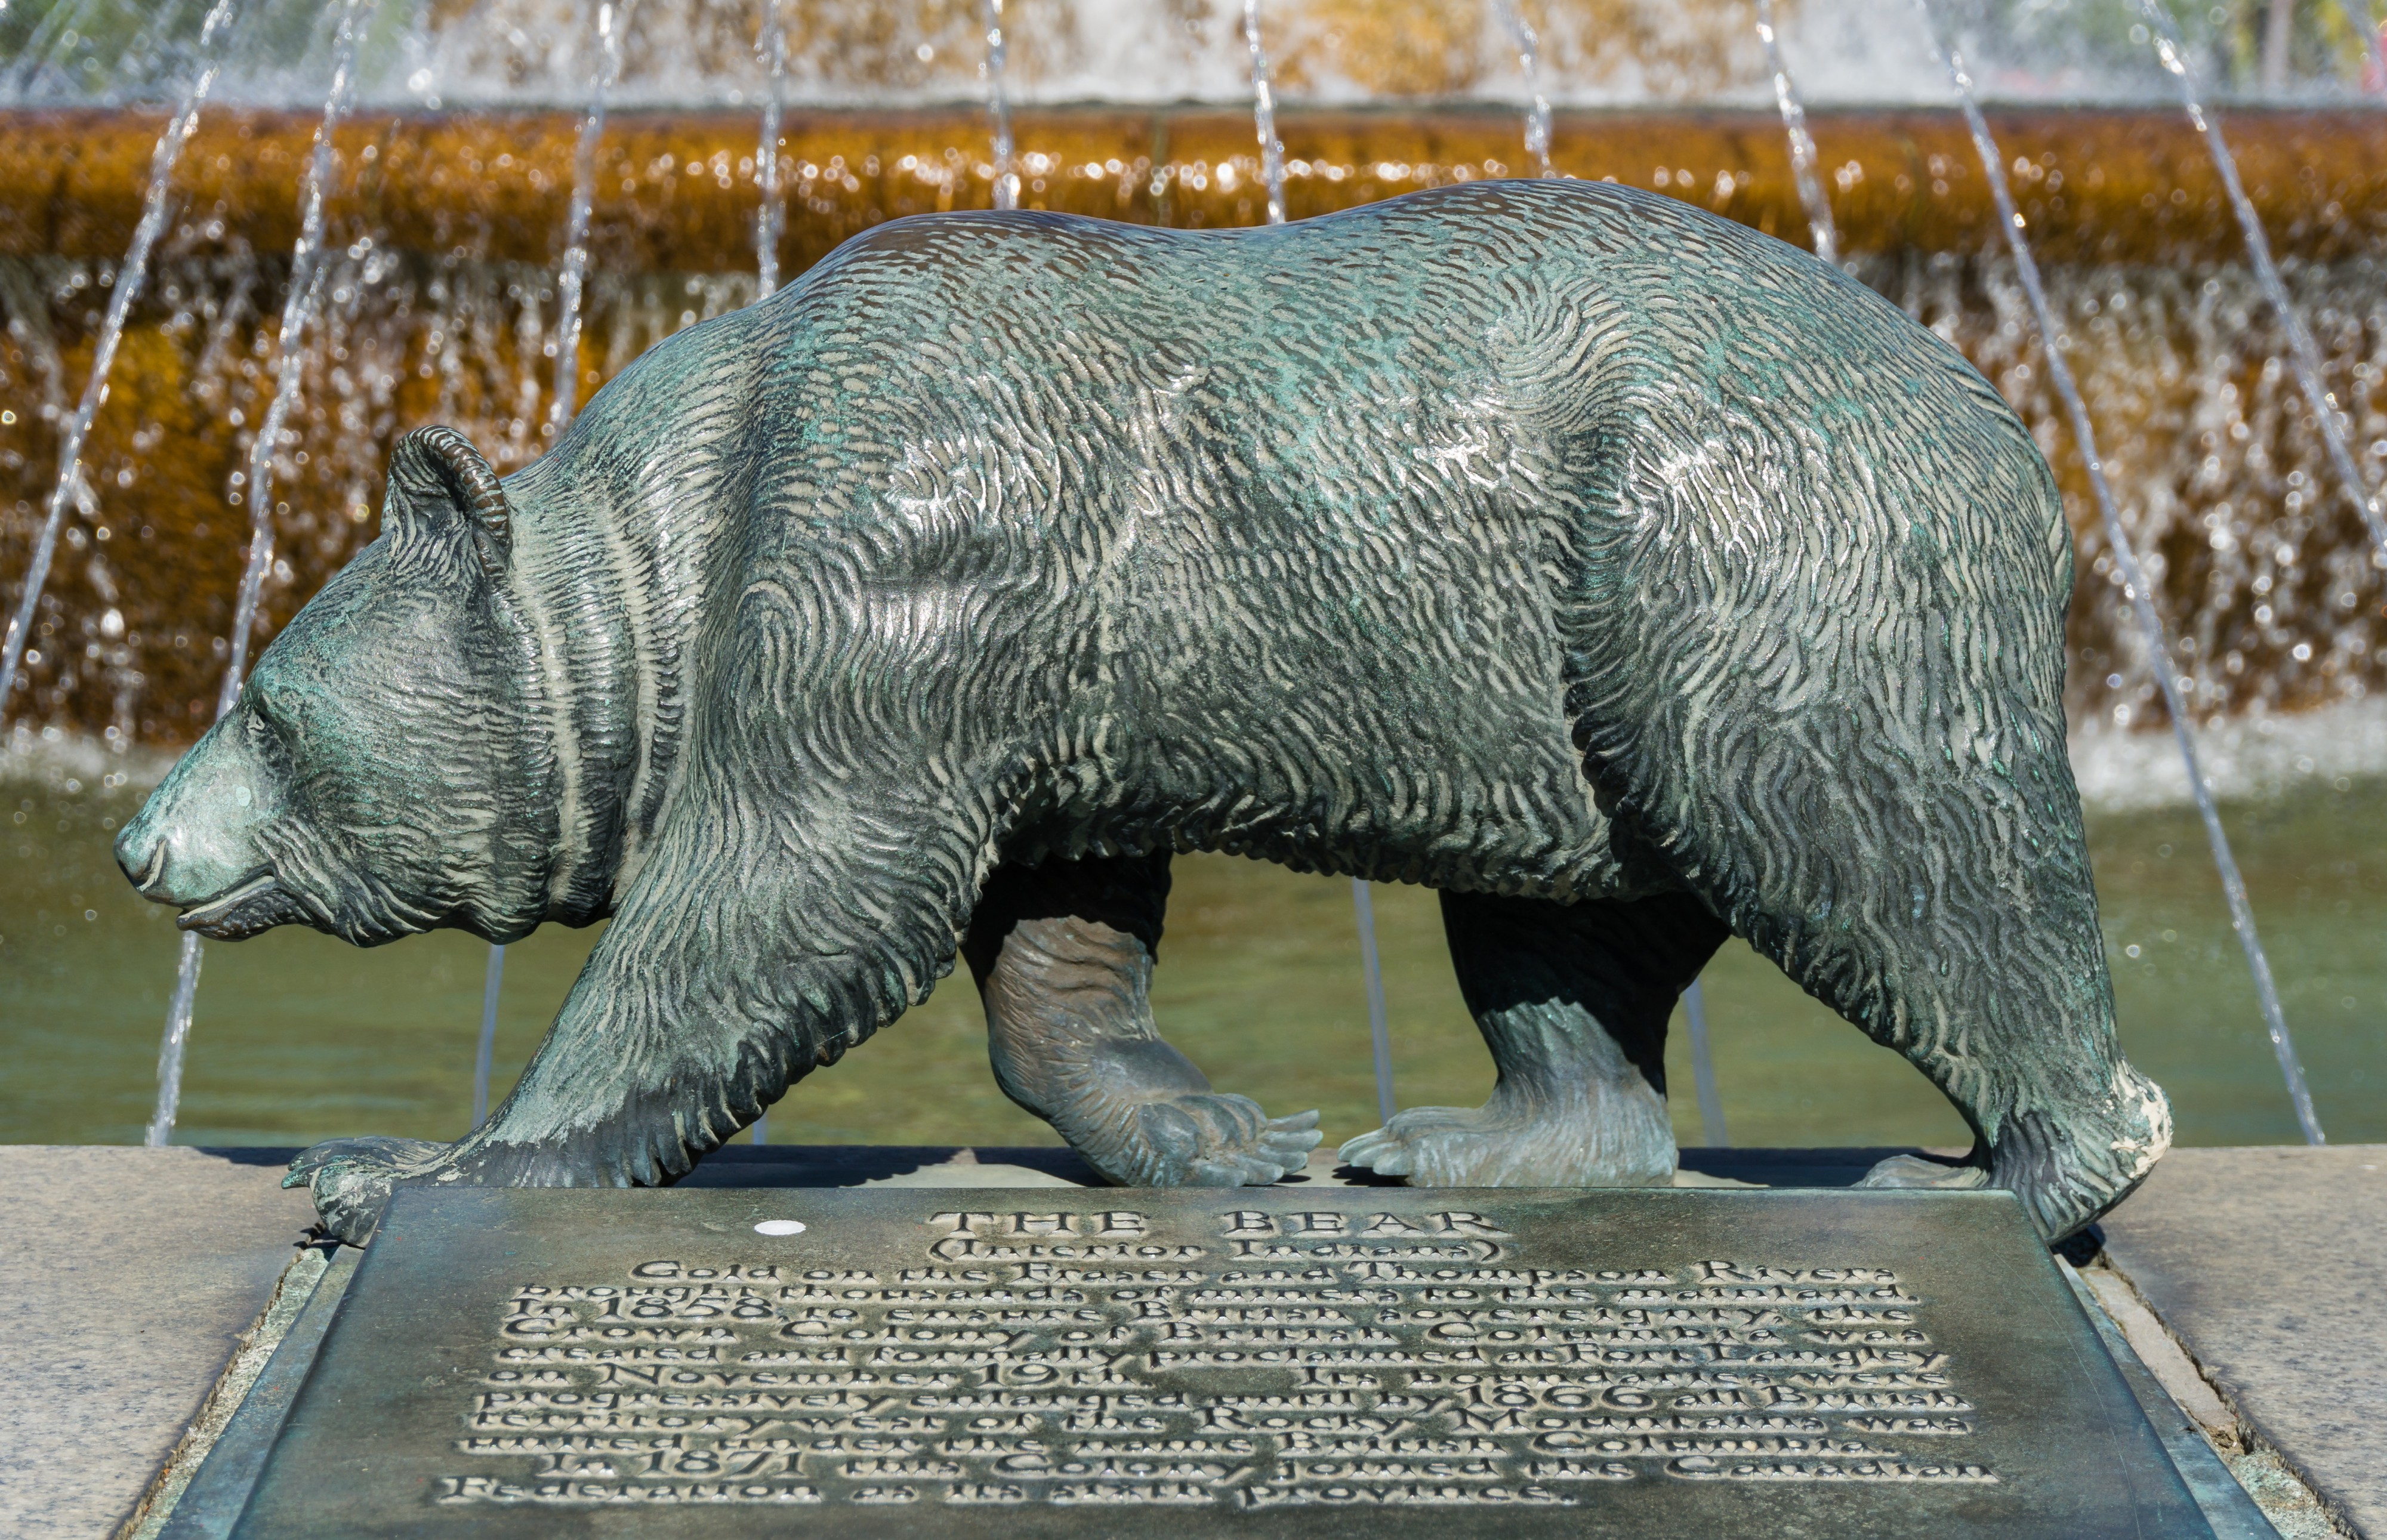 A bronze statue of bear, Victoria Centennial Fountain, Victoria, British Columbia, Canada 02